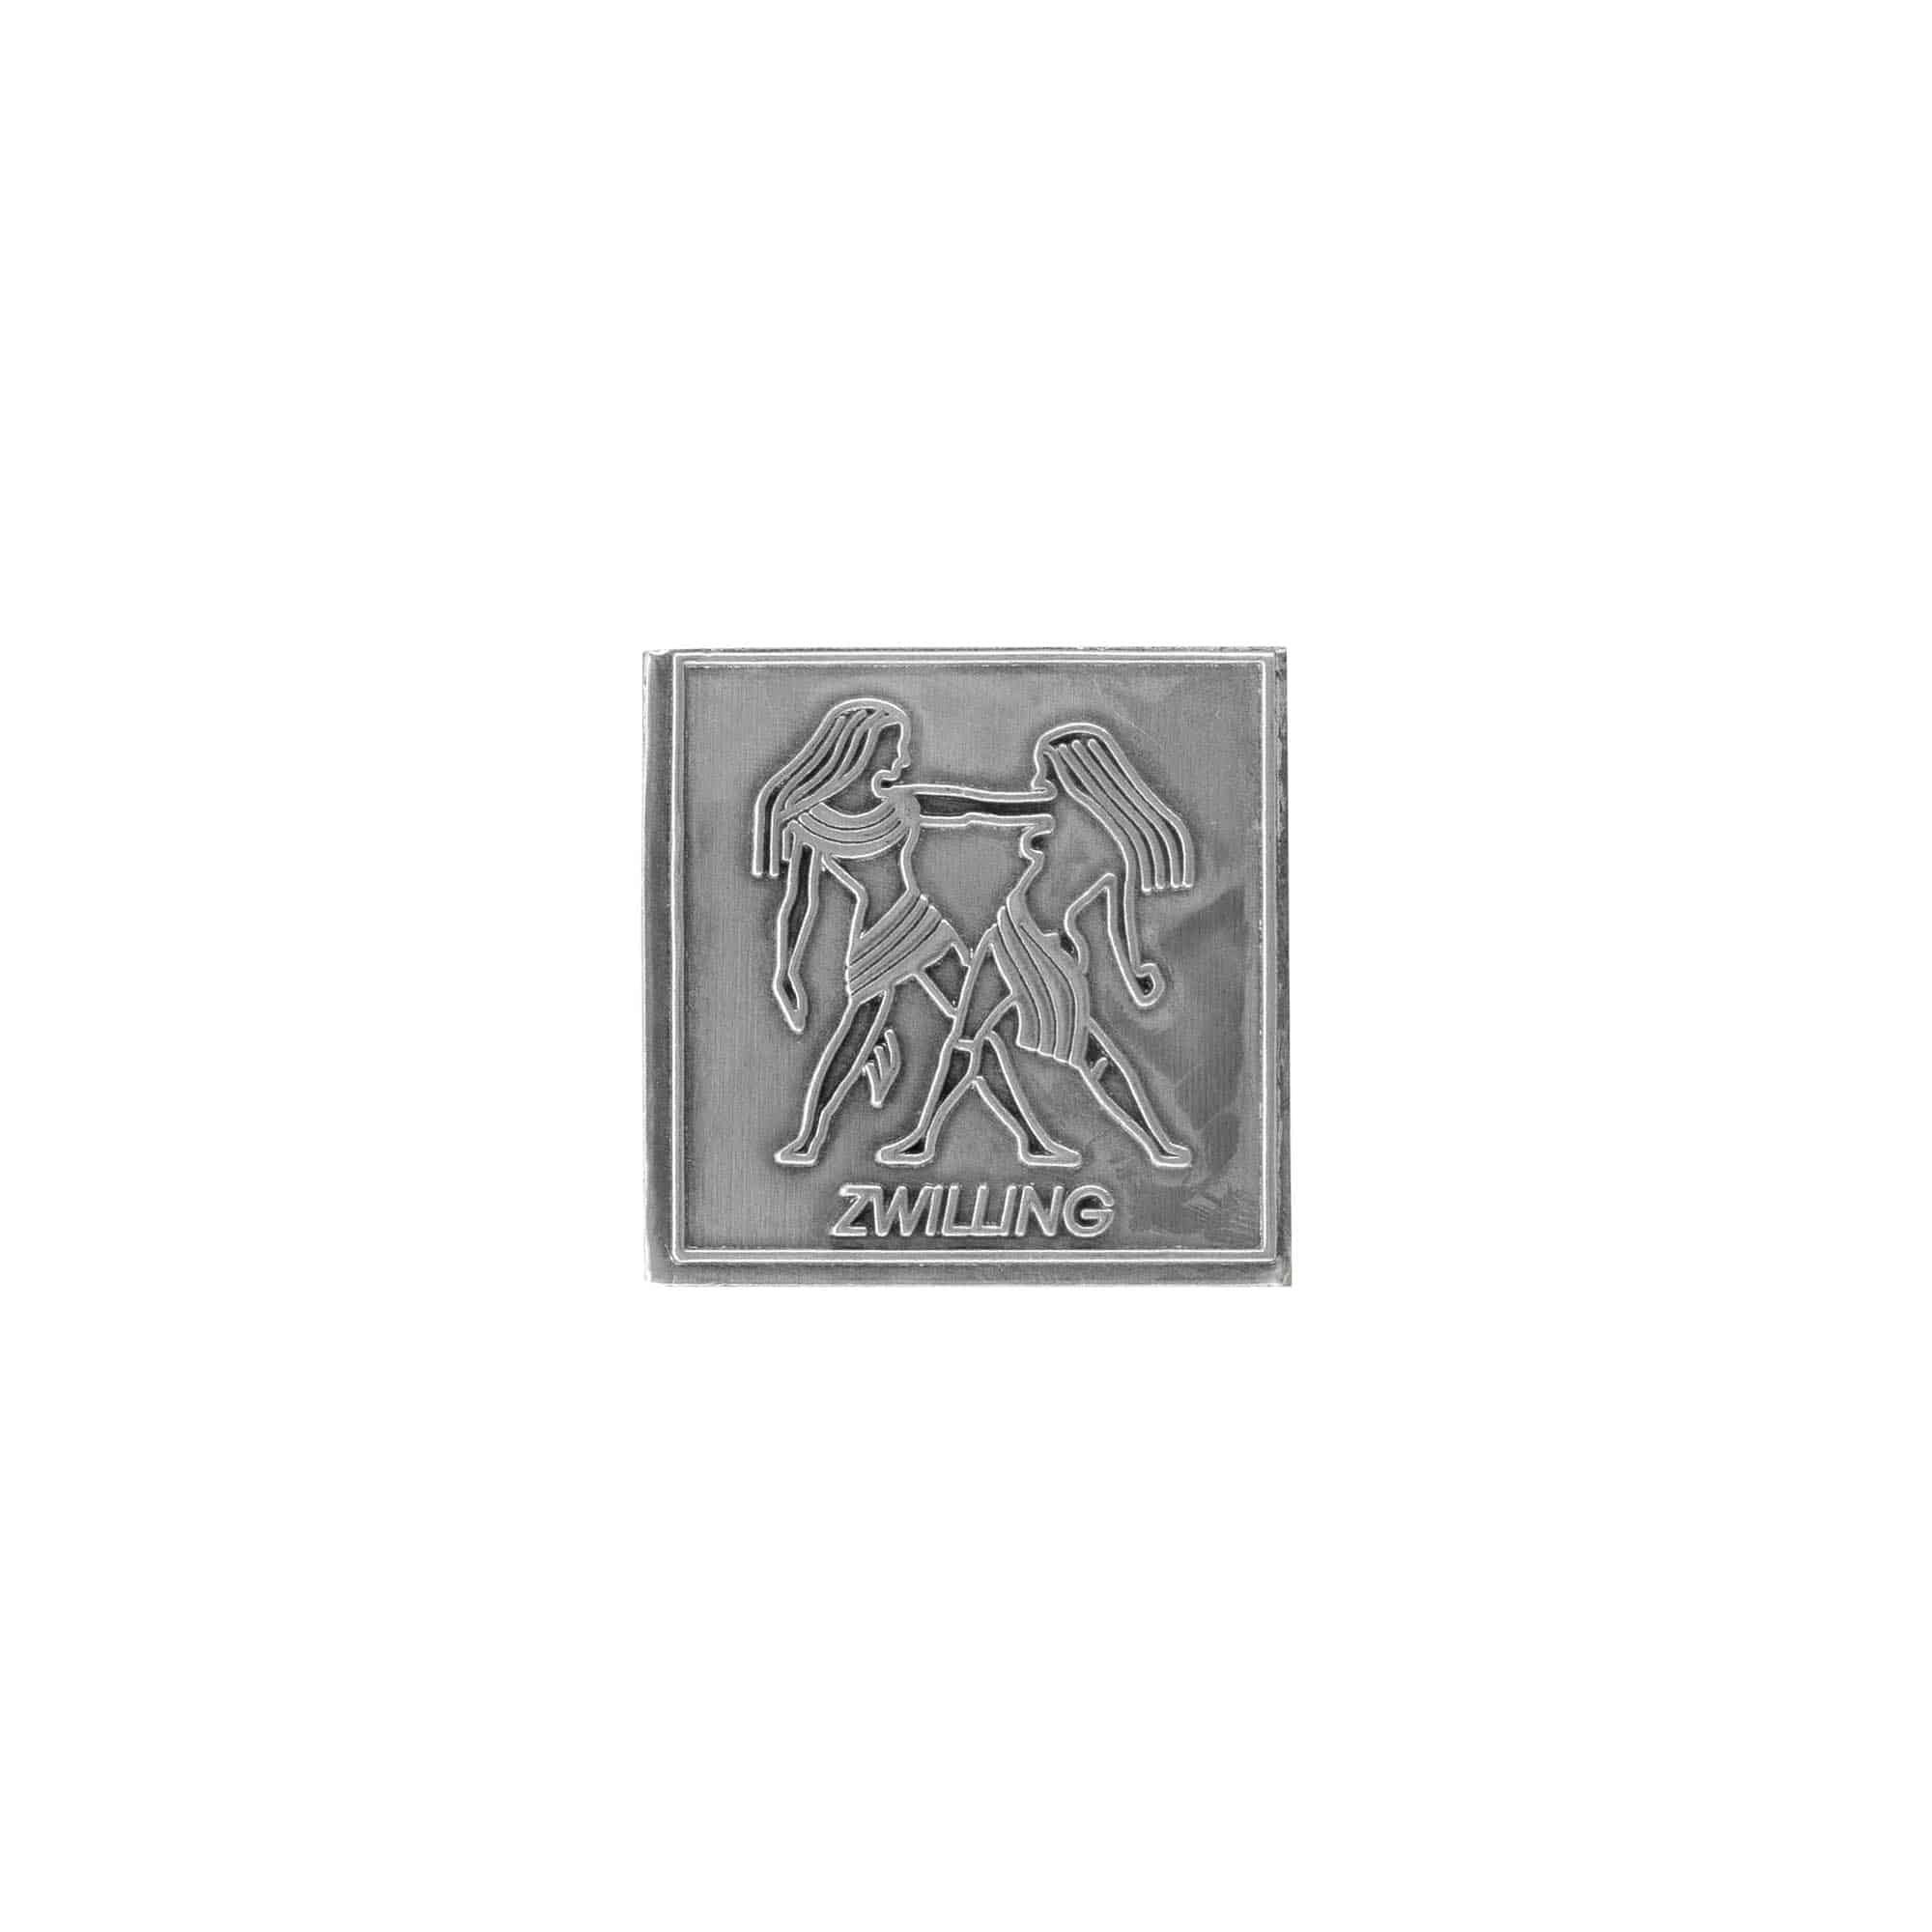 Etykieta cynowa 'Bliźnięta', kwadratowa, metal, kolor srebrny